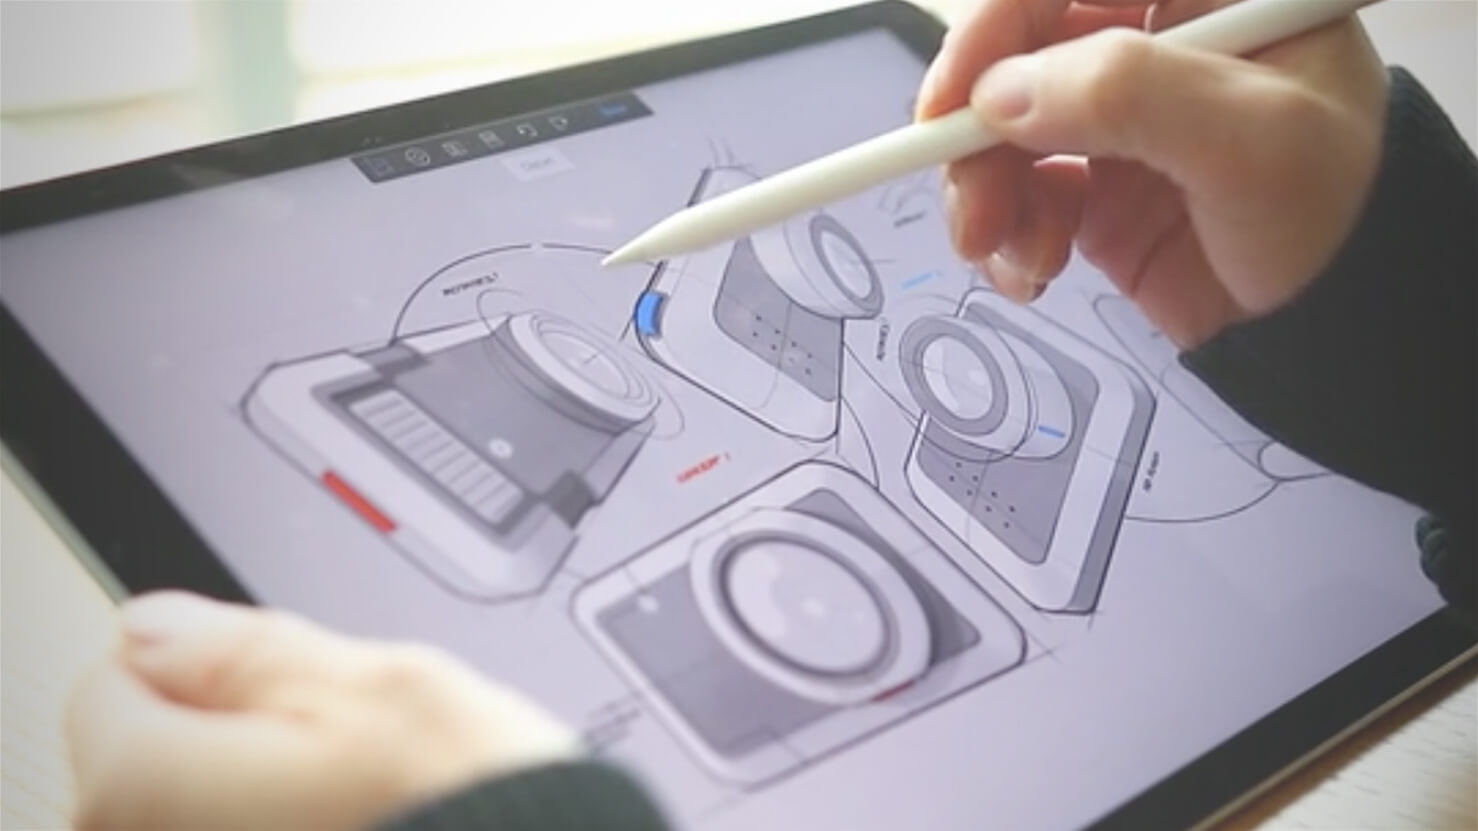 Ứng dụng vẽ tranh trên iPad cho phép bạn tạo ra các tác phẩm nghệ thuật độc đáo chỉ với một chiếc bút và một chiếc iPad. Bạn có thể lựa chọn nhiều loại bút và màu sắc khác nhau để tạo ra những bức tranh tuyệt đẹp nhất. Hãy xem hình ảnh và trải nghiệm ngay ứng dụng này trên iPad của bạn nhé!